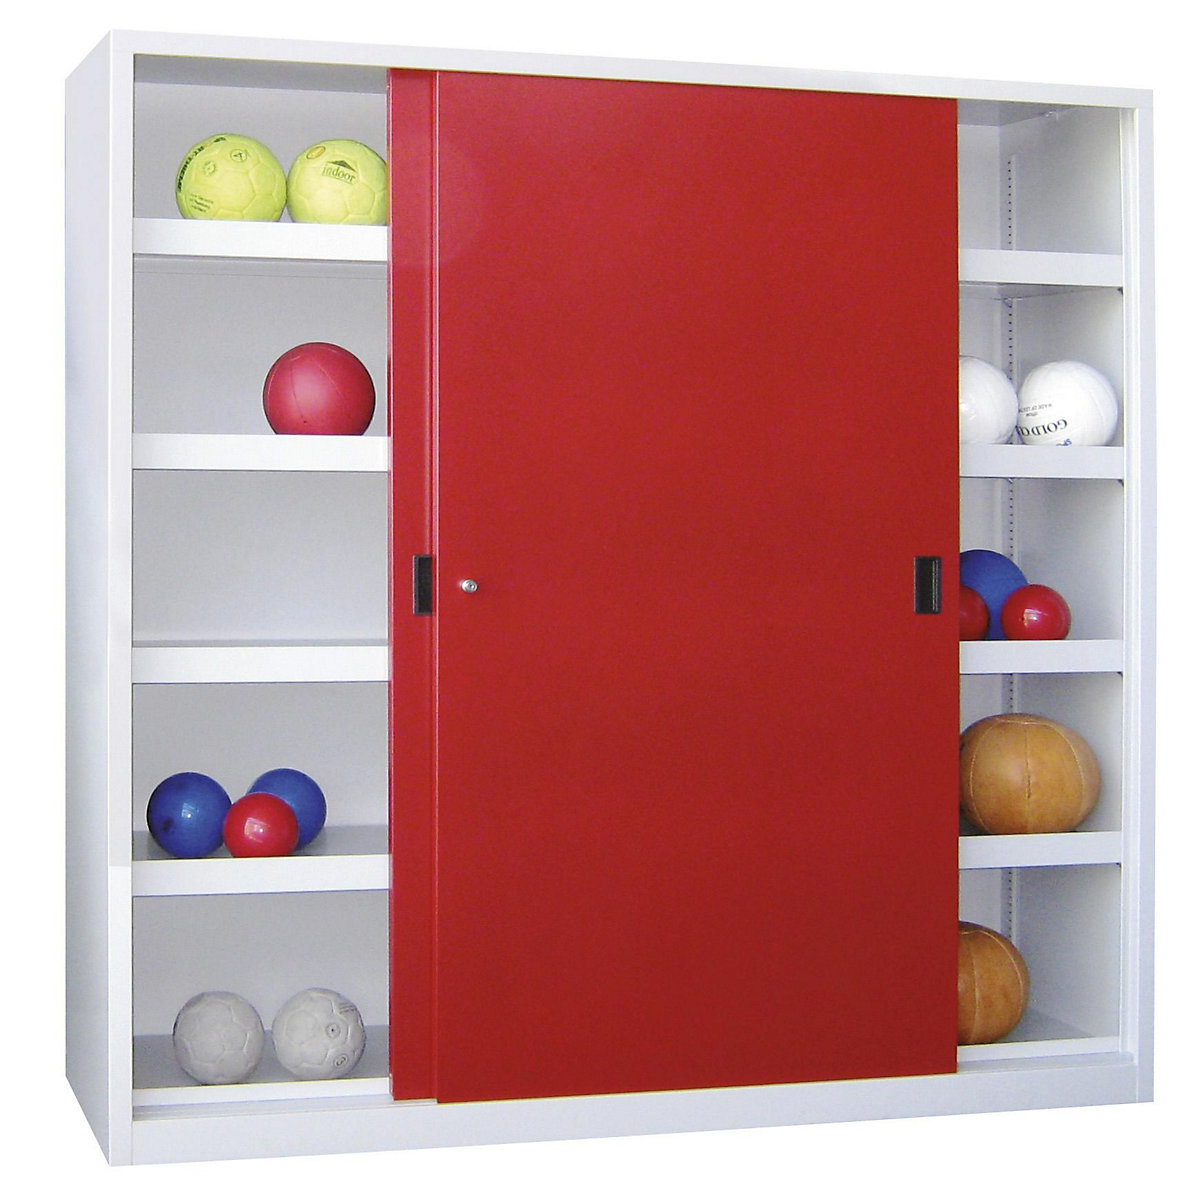 Labdatároló tolóajtós szekrény, magasság 1950 mm – Pavoy, sima ajtókkal, szélesség 2000 mm, szürke / piros